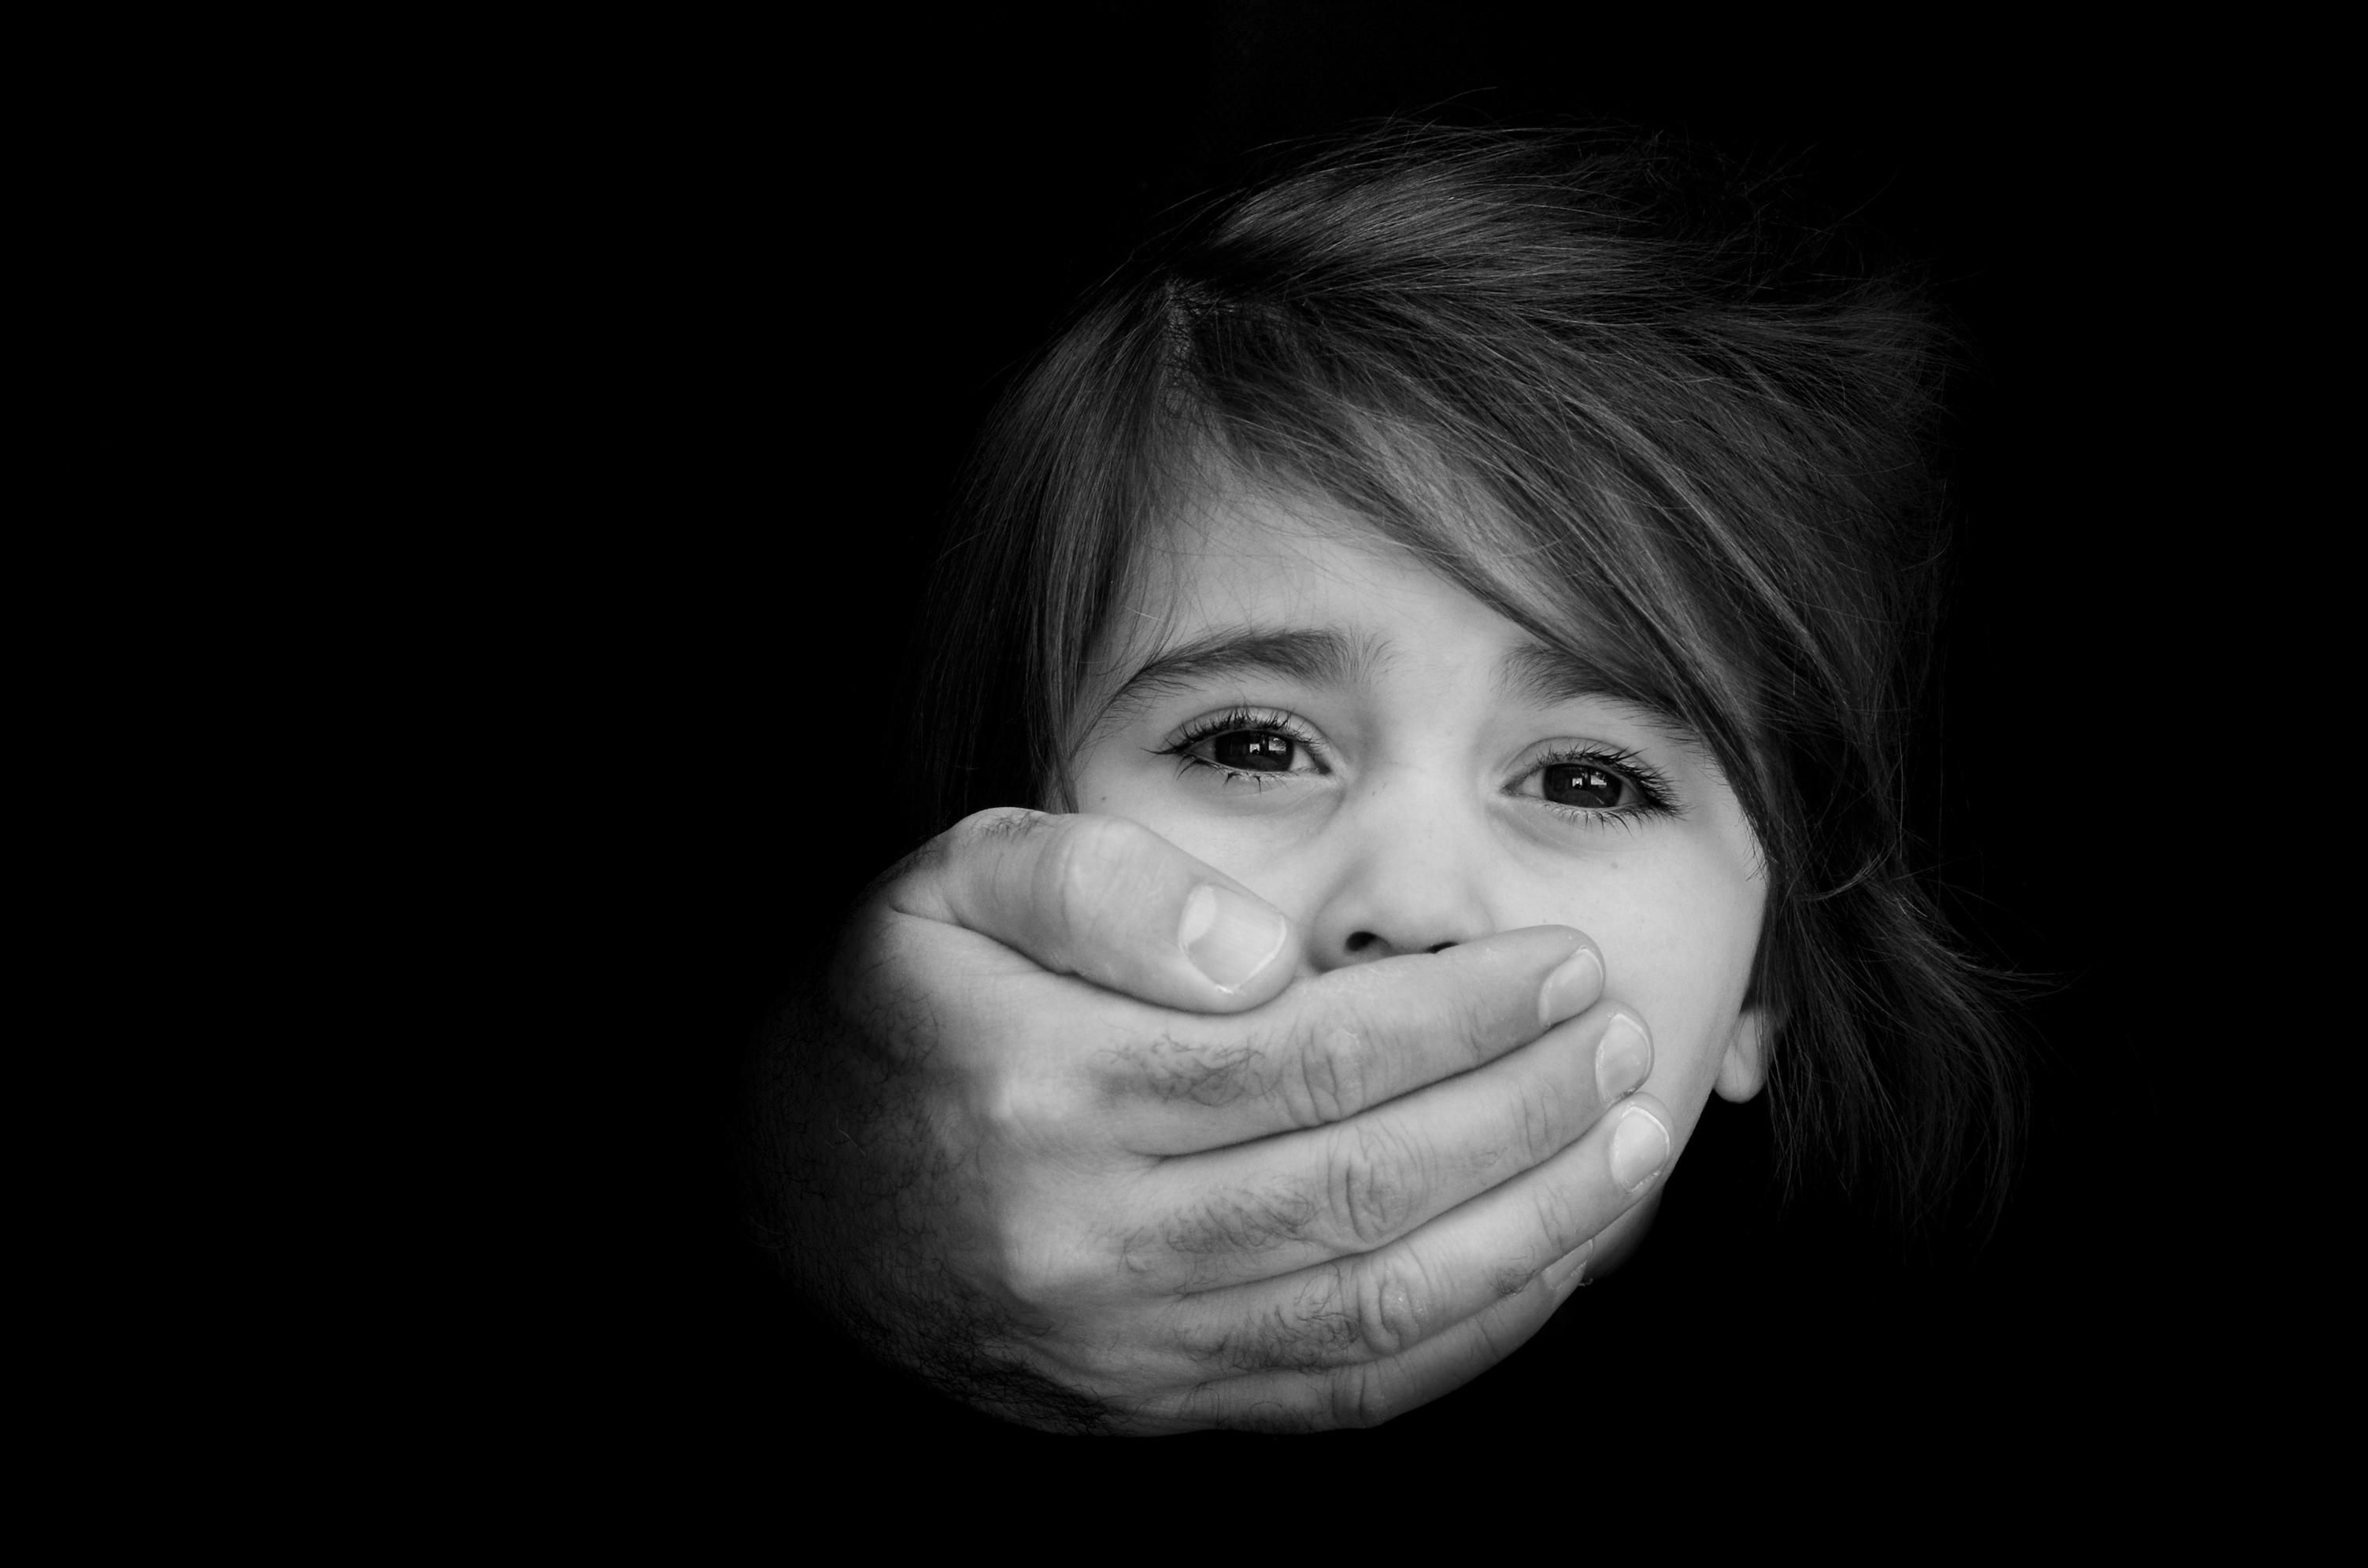 За рік жертвами насилля в Україні стали близько 900 дітей, частина таких злочинів прихована - Новини кримінал - 24 Канал